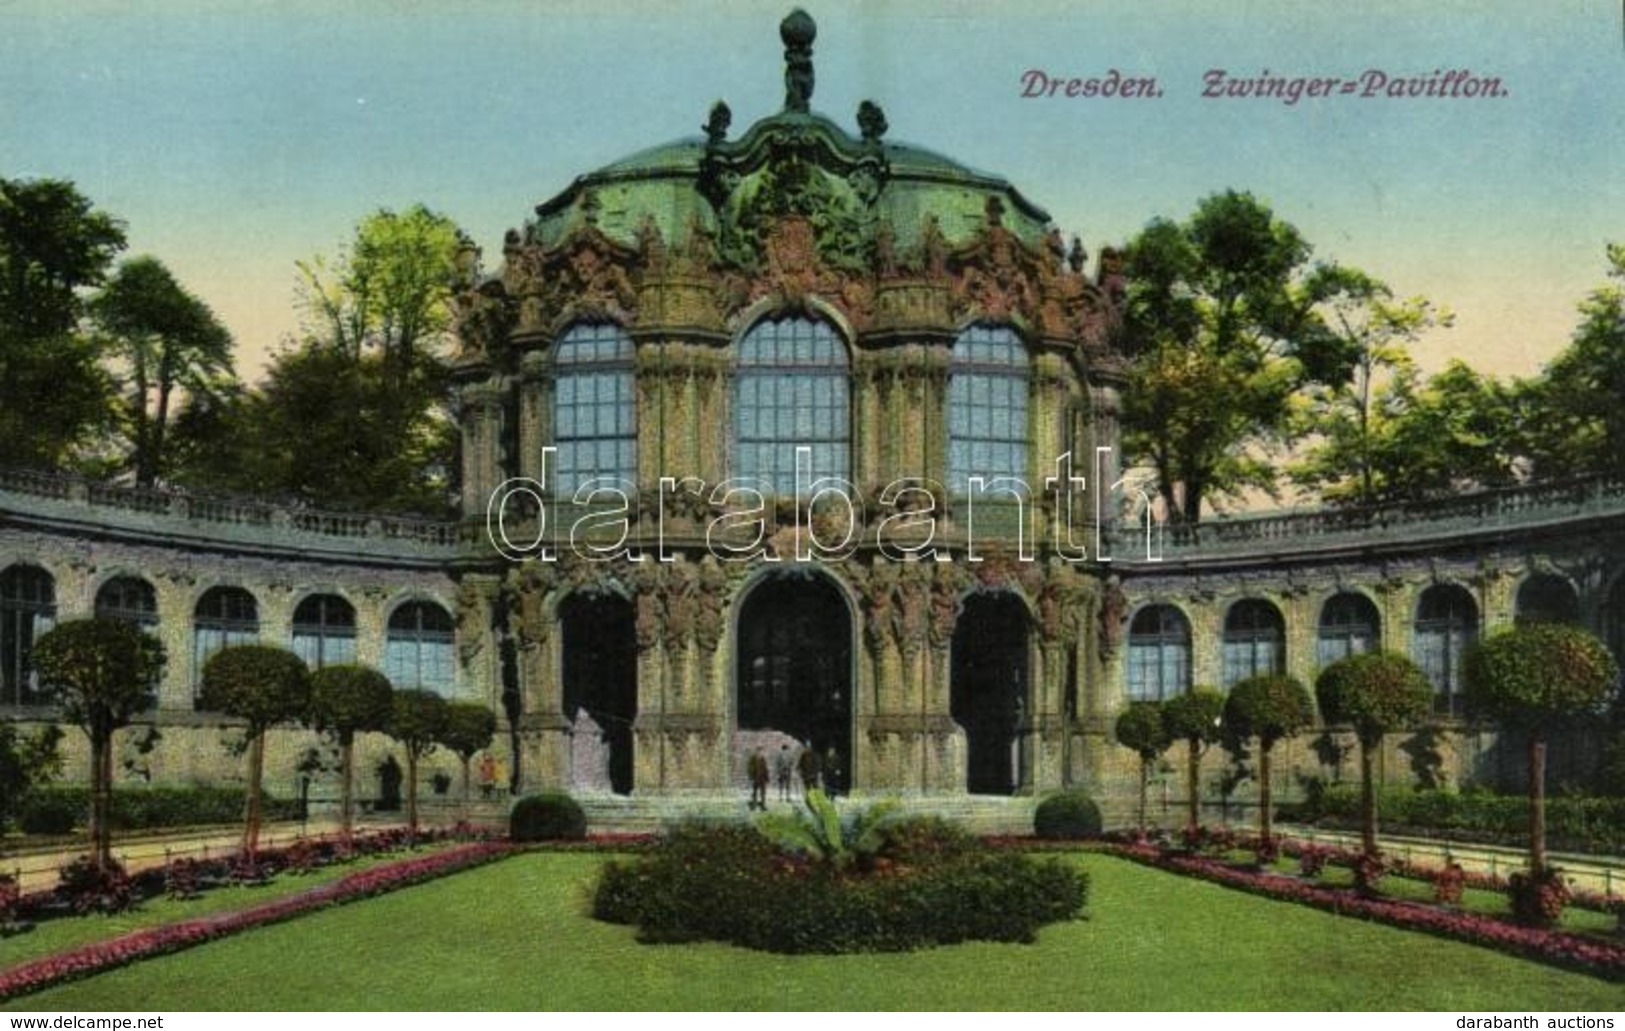 ** T1/T2 Dresden, Zwinger-Pavillon / Garden, Pavilion - Unclassified